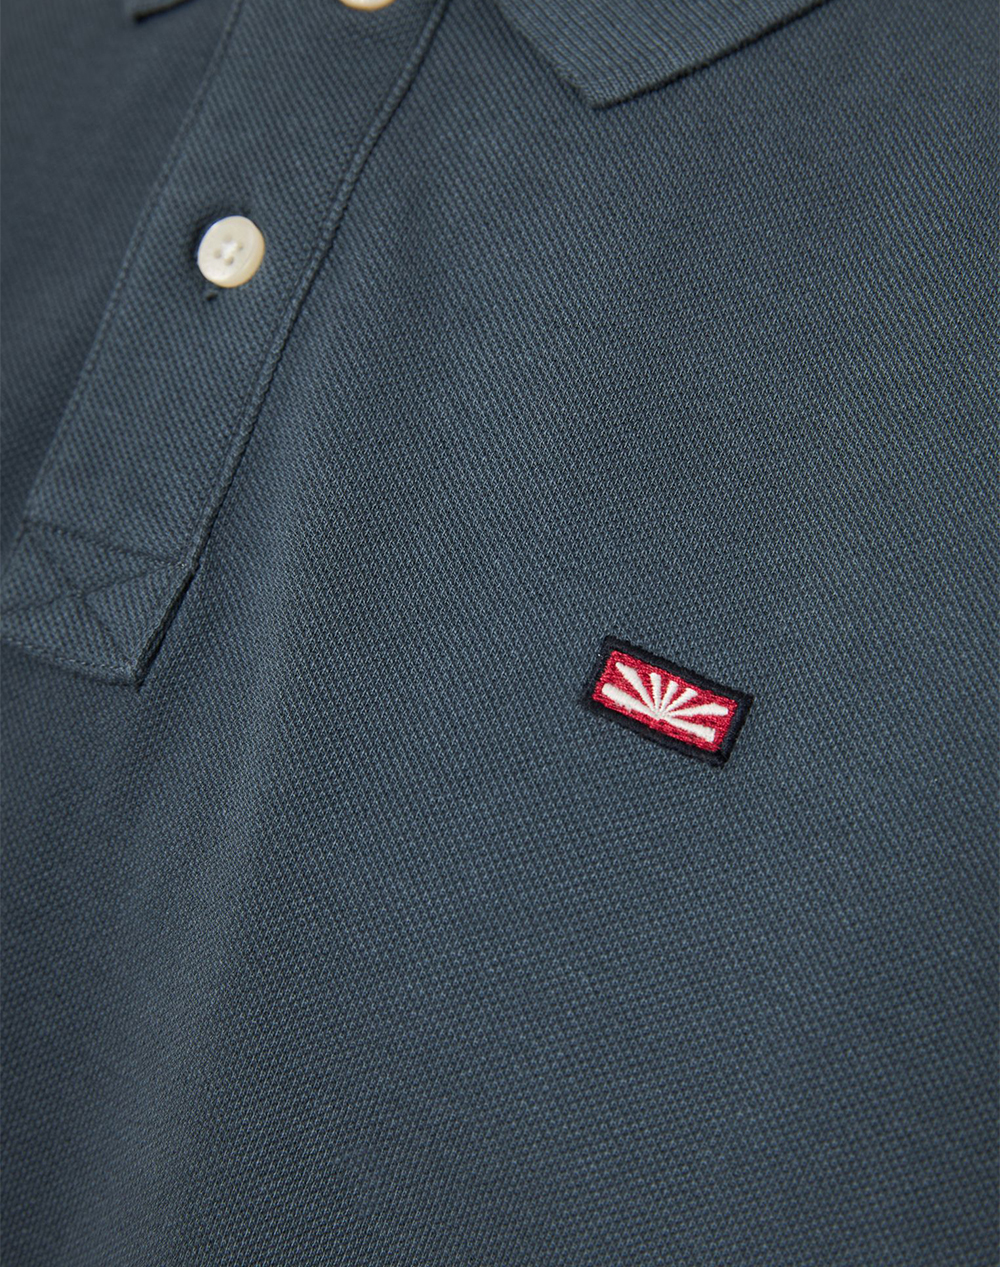 FUNKY BUDDHA Essential polo μπλούζα με κεντημένο logo